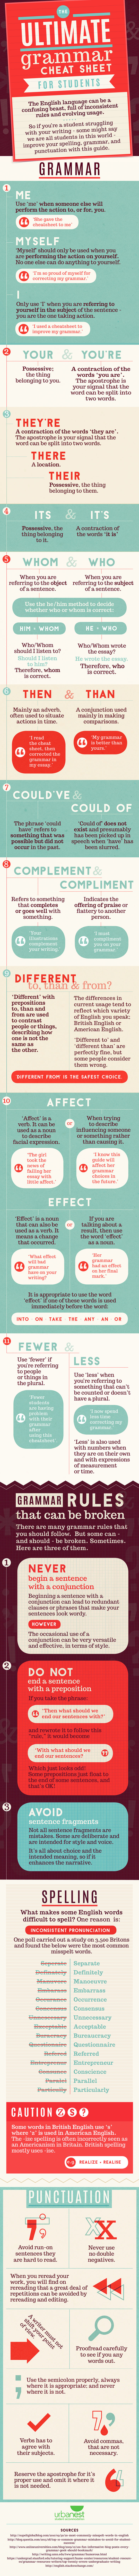 grammar-cheat-sheet-infographic